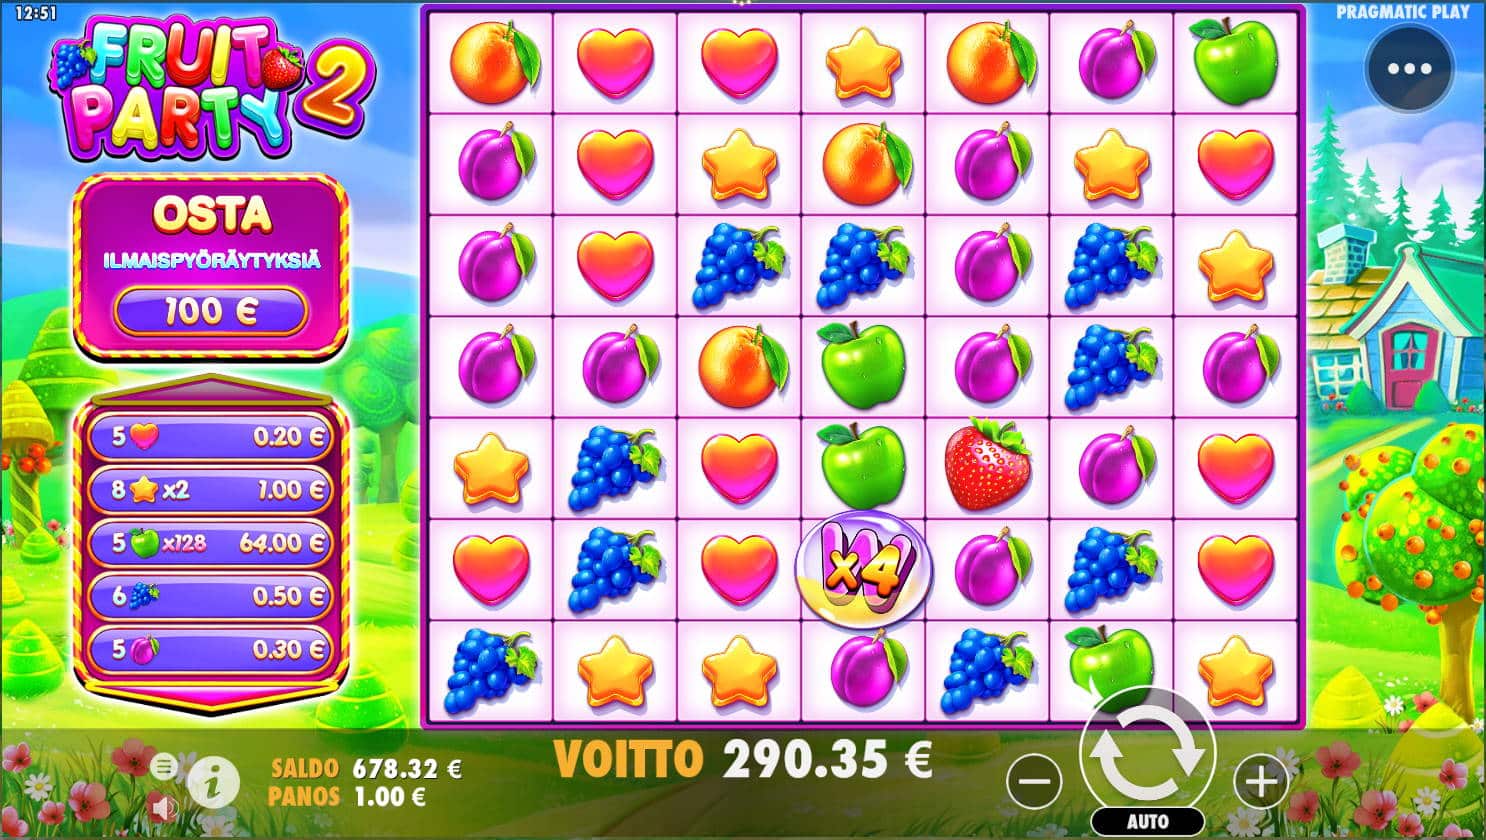 Fruit Party 2 Casino win picture by Kari Grandi 11.7.2022 290.35e 290X